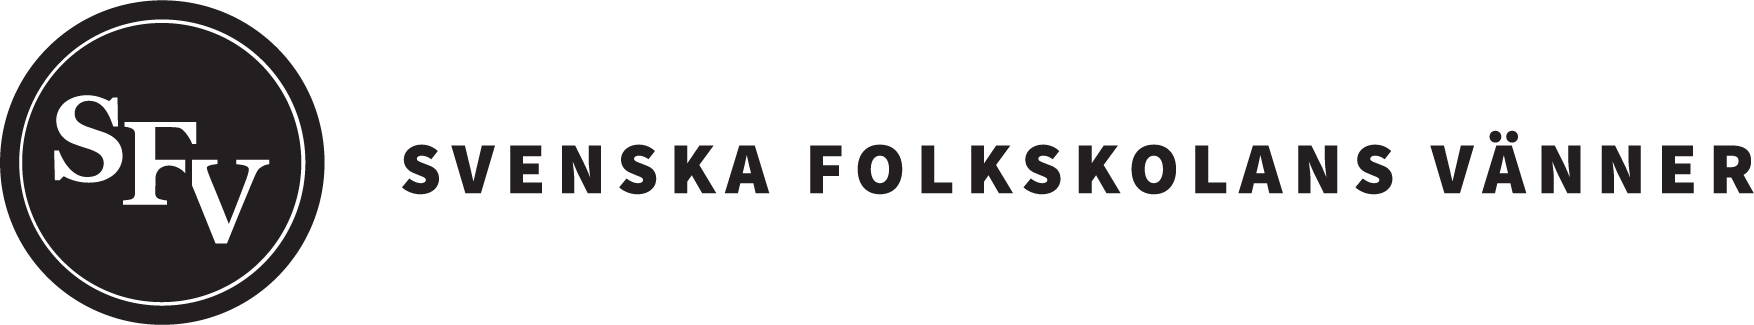 Svenska folkskolans vänner logo.